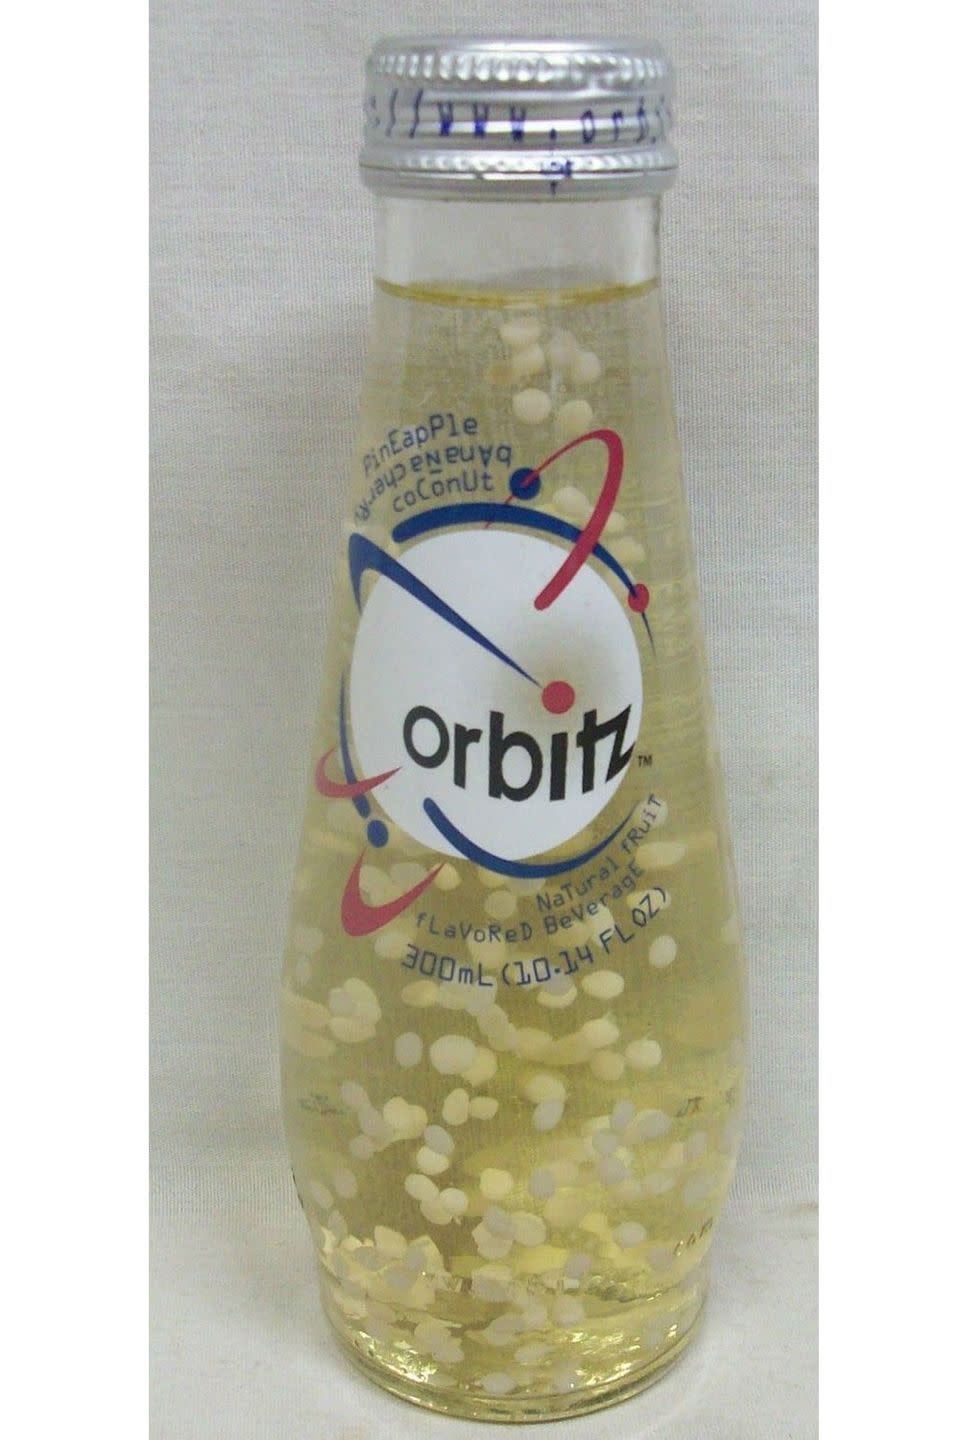 1997: Orbitz